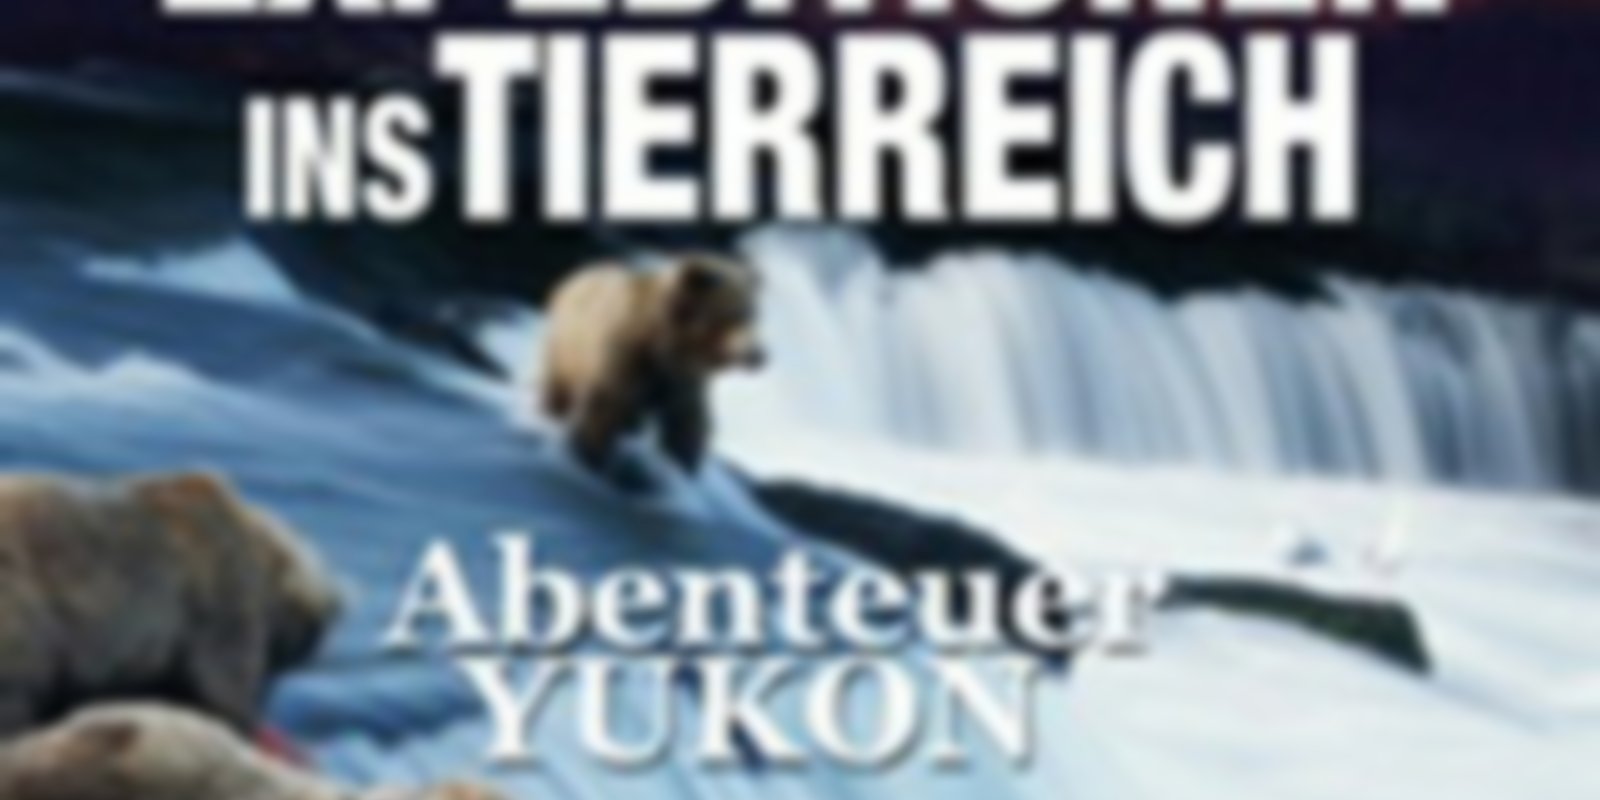 Expeditionen ins Tierreich - Abenteuer Yukon